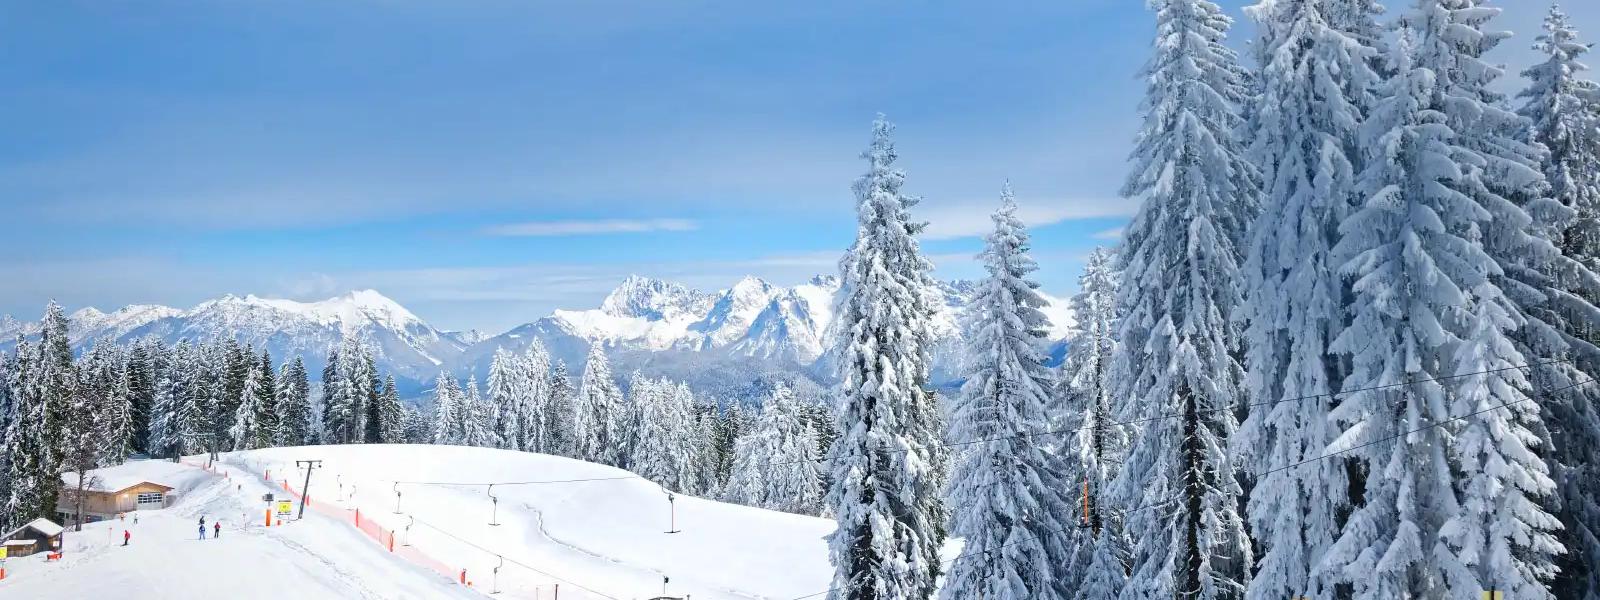 Ferienwohnungen und Ferienhäuser für den perfekten Skiurlaub in Deutschland - e-domizil